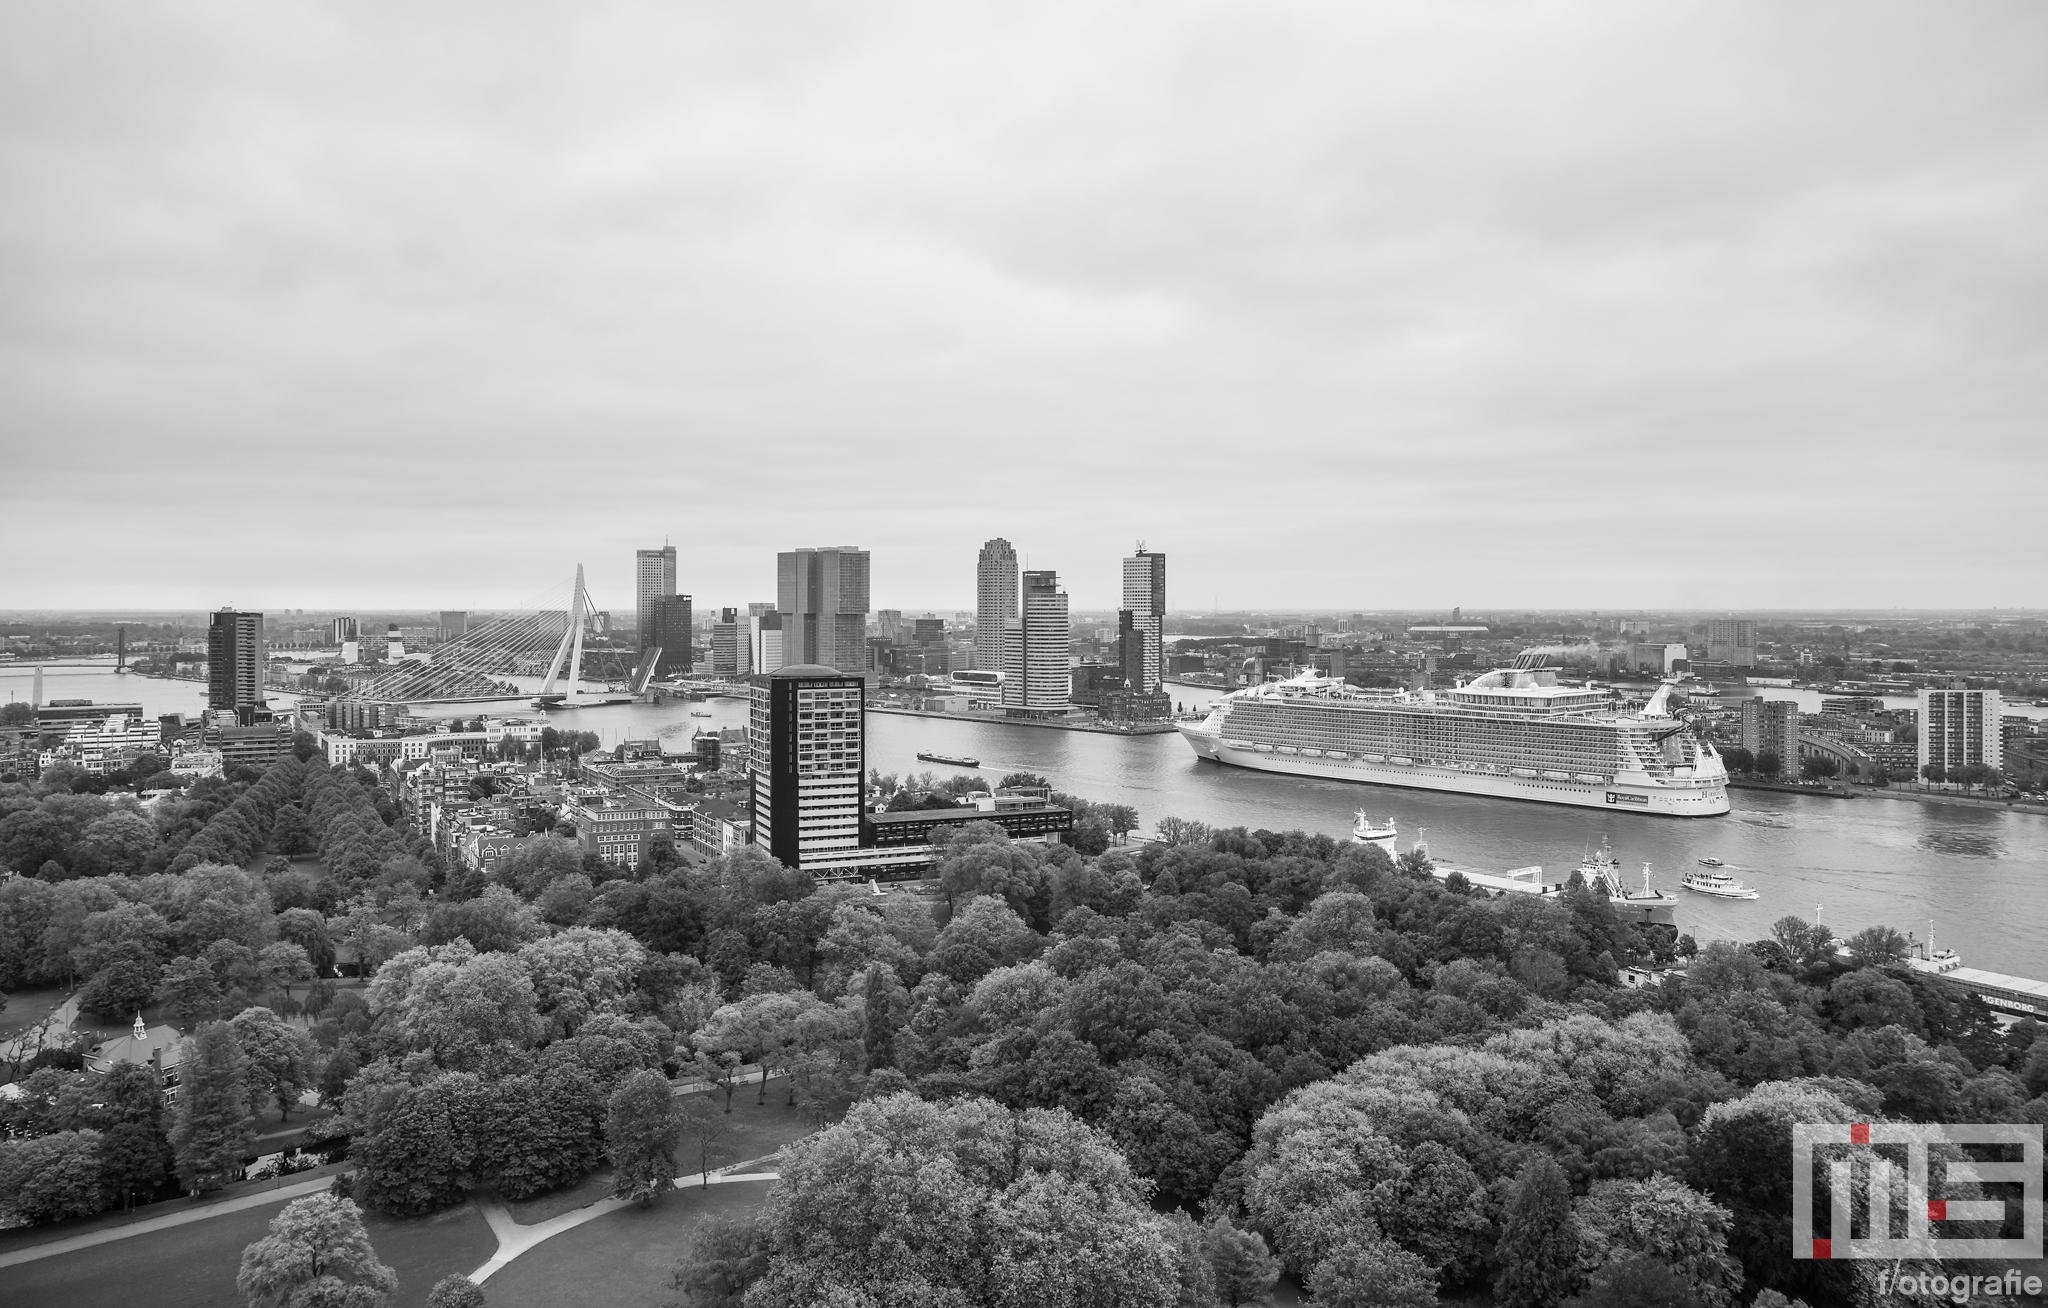 Te Koop | Het cruiseschip Harmony of the Seas gaat richting de Cruise Terminal in Rotterdam in zwart/wit